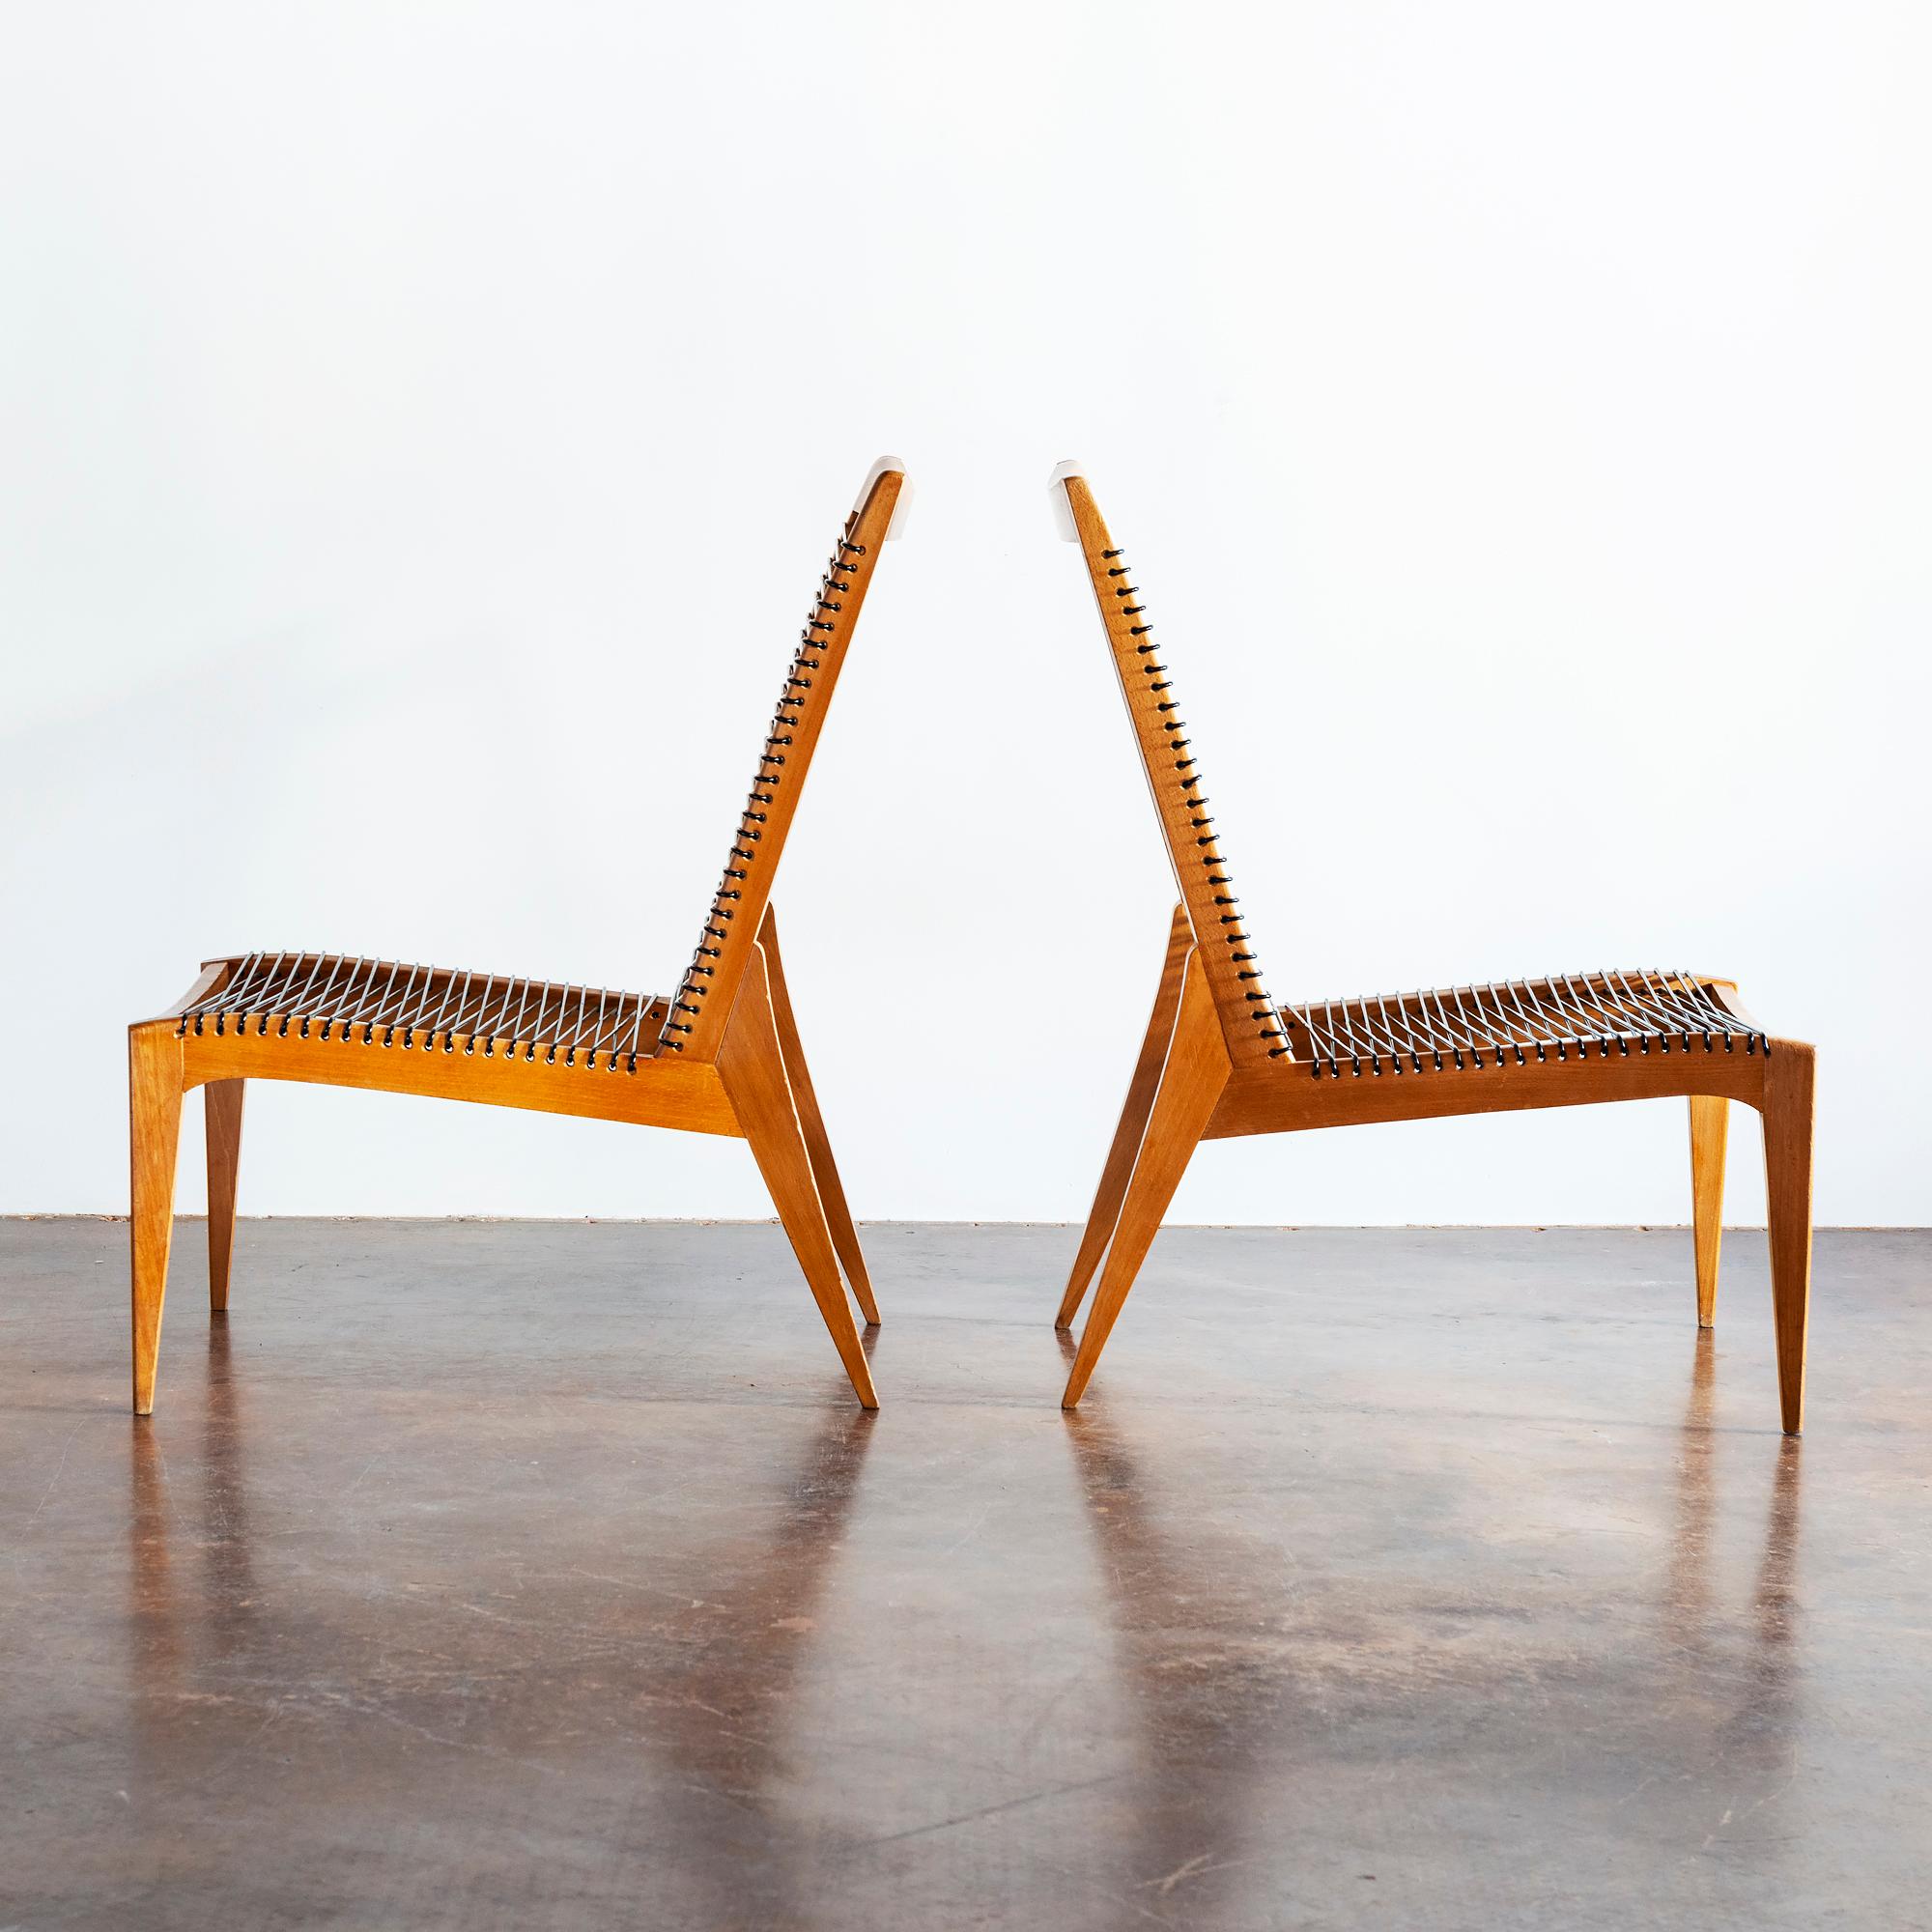 Ein Paar elegante Louis-Sognot-Sessel aus Eiche und Cord, Frankreich, 1950er Jahre.